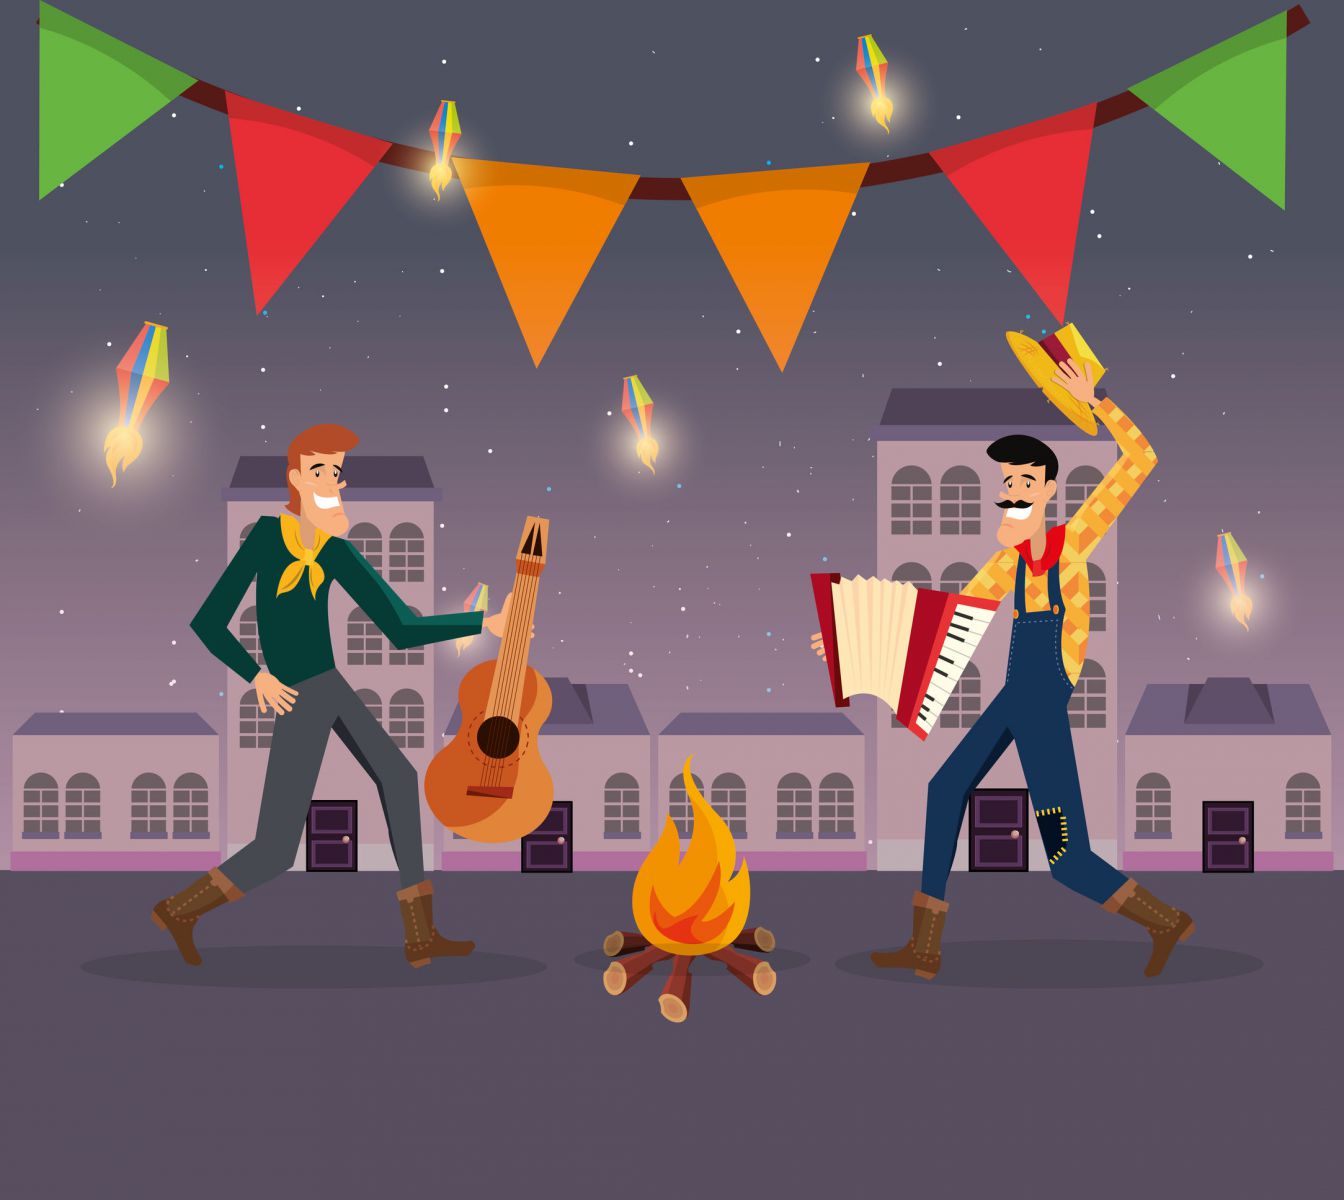 Desenho de dois homens, com trajes típicos de festa junina, ao lado de uma fogueira. Um homem toca um violão, e o outro toca uma sanfona.